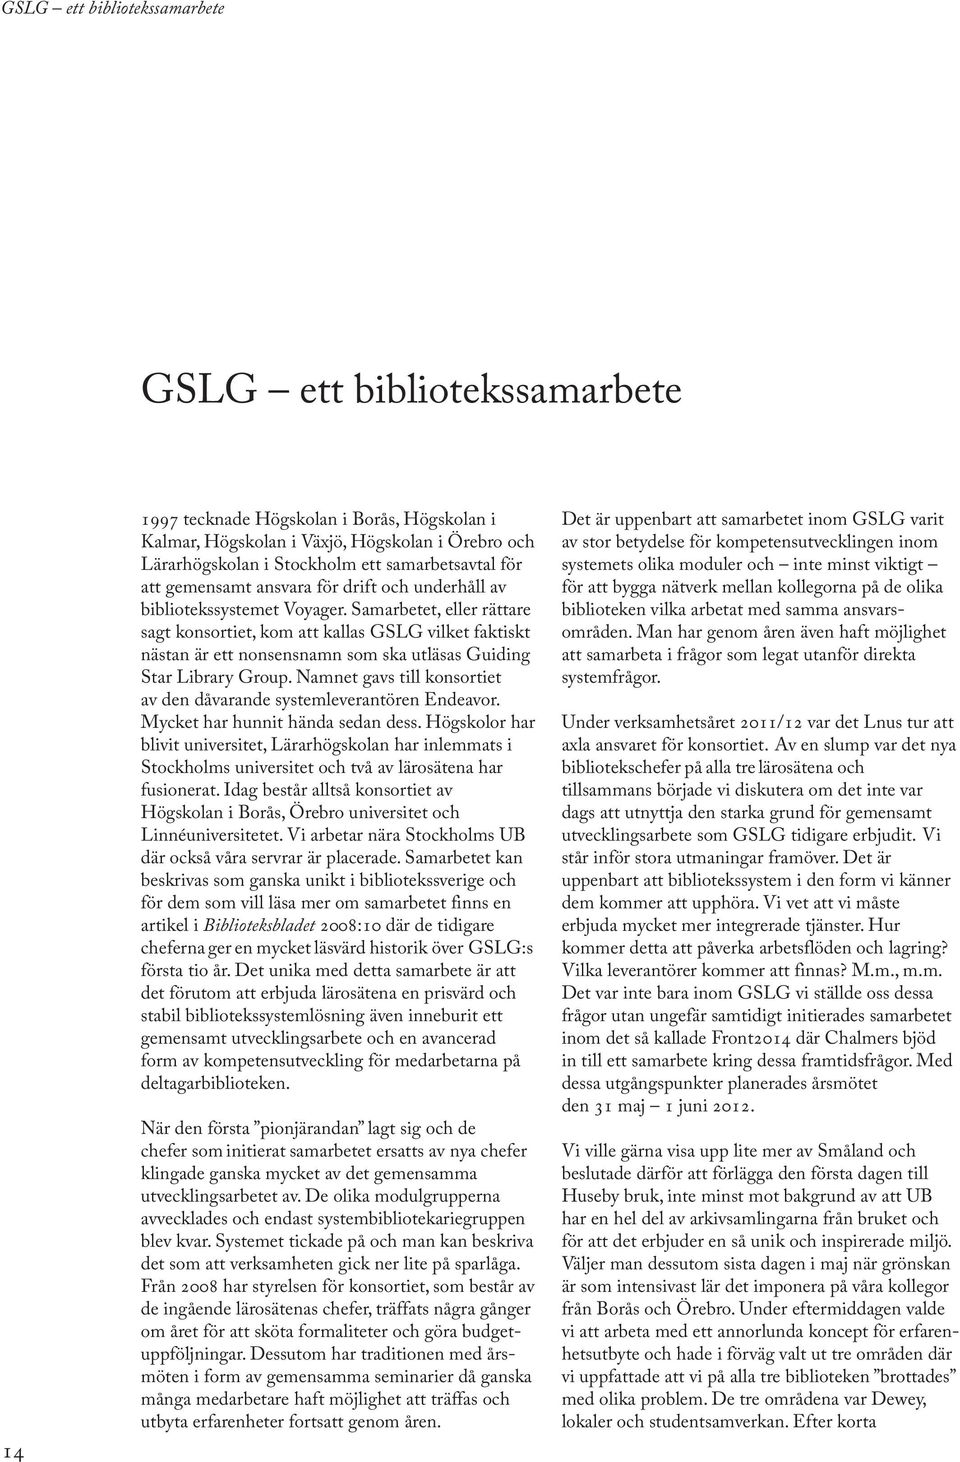 Samarbetet, eller rättare sagt konsortiet, kom att kallas GSLG vilket faktiskt nästan är ett nonsensnamn som ska utläsas Guiding Star Library Group.